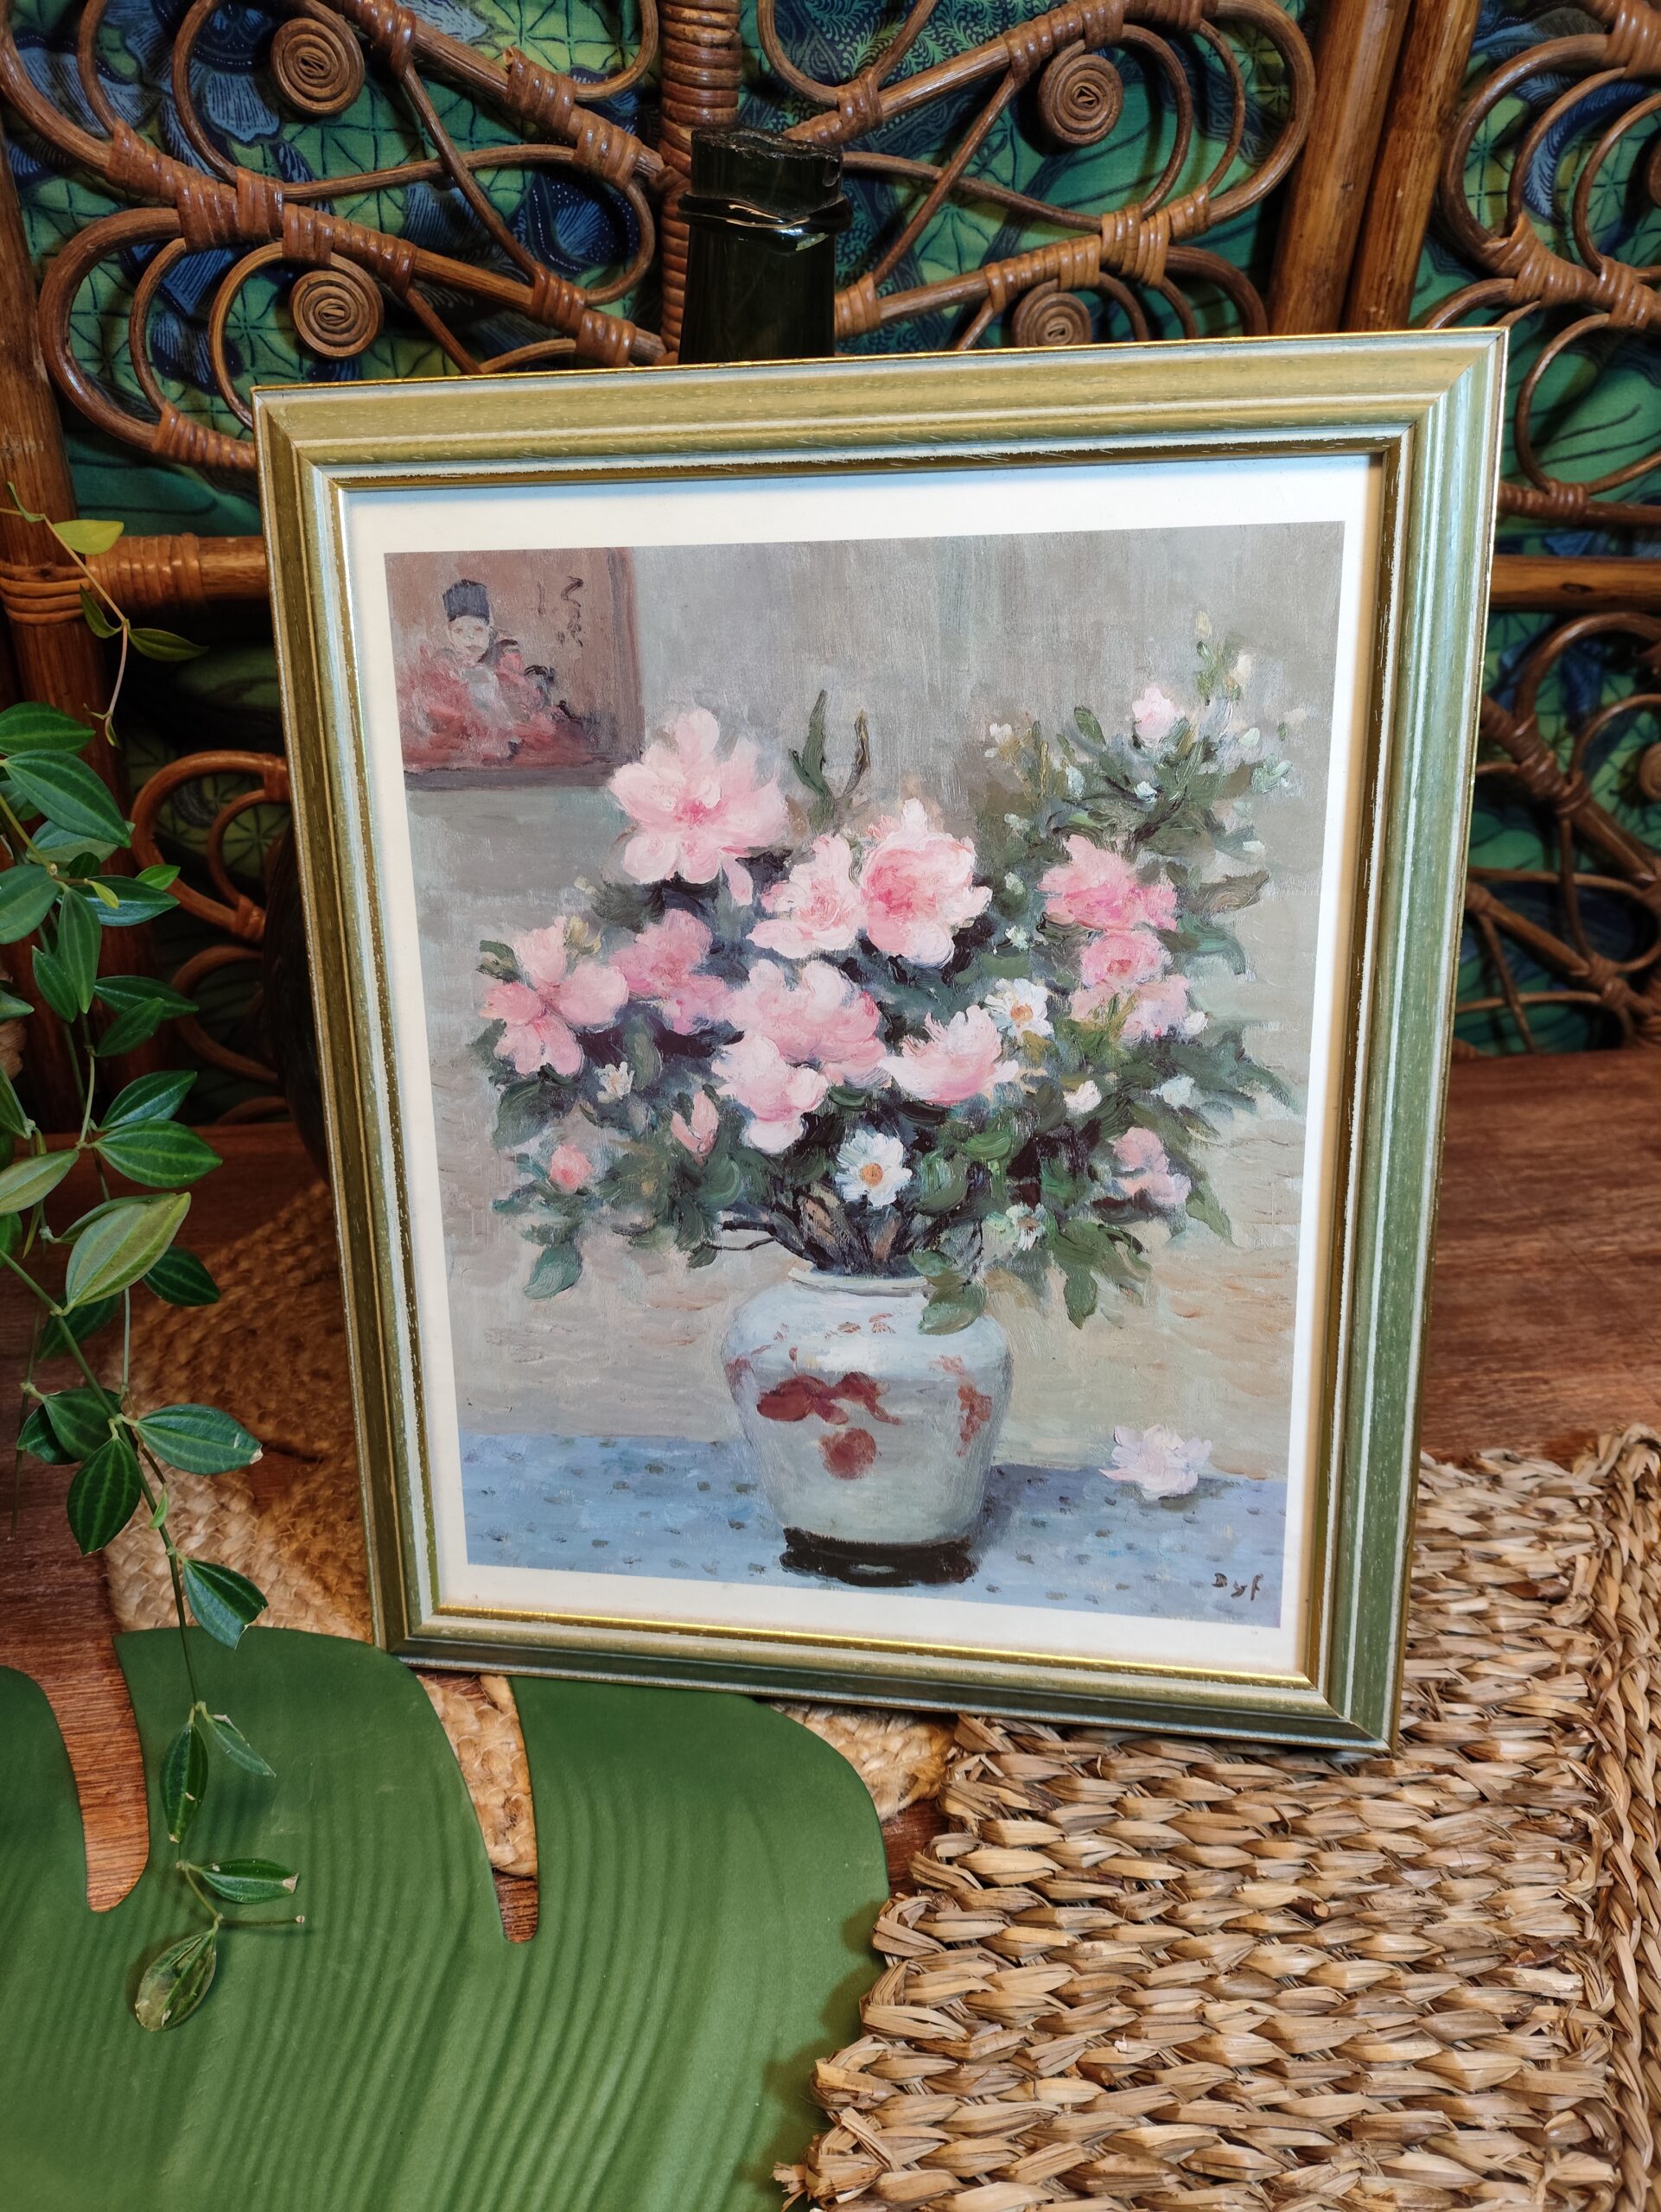 Tableau bouquet de fleurs roses nature morte cadre bois vert vintage